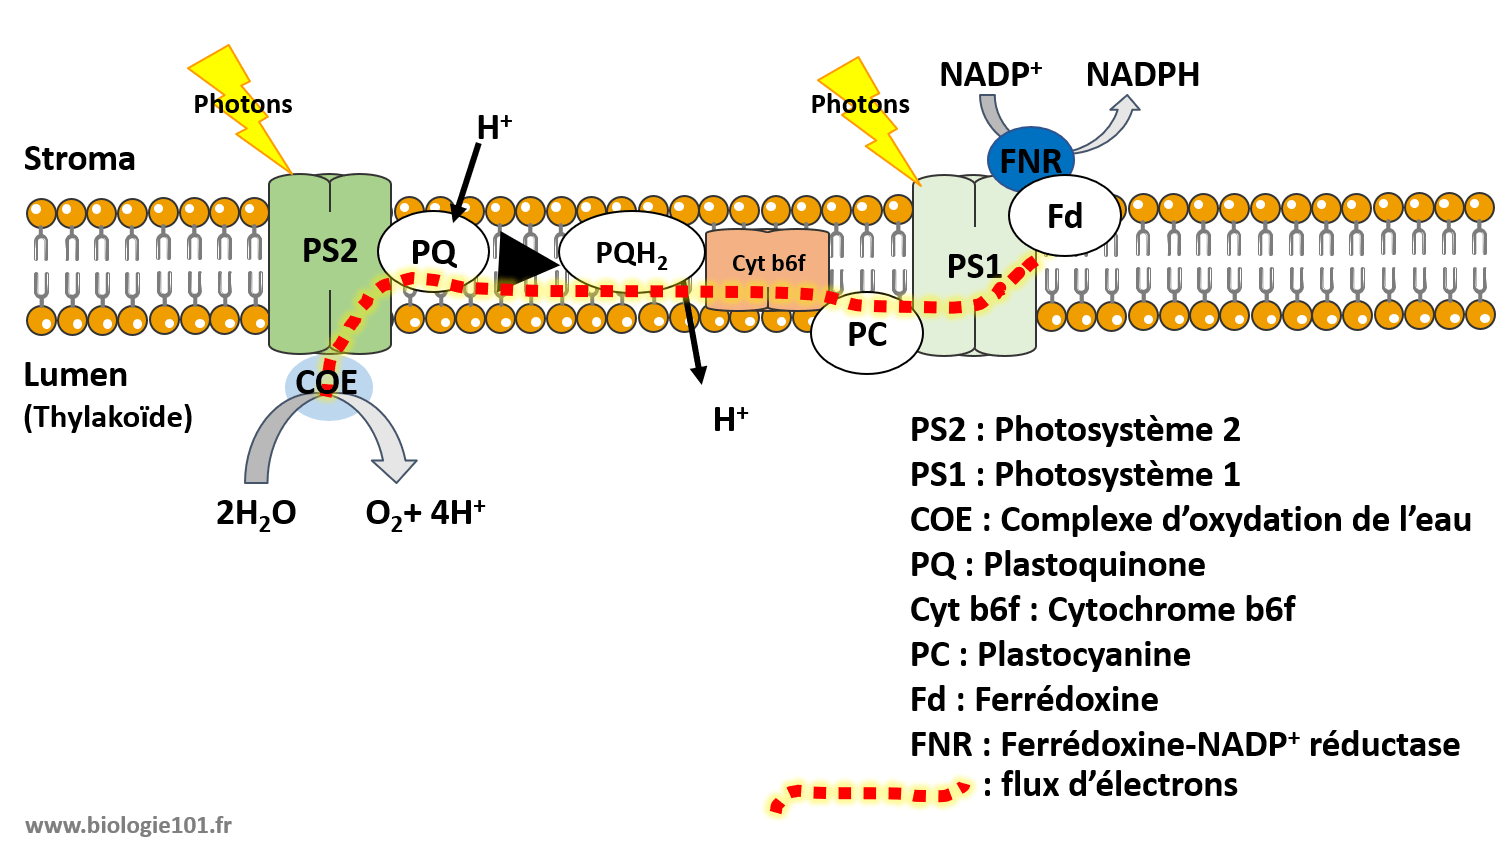 Bilan de la phase photochimique de la photosynthèse avec le parcours des électrons à travers la membrane des thylakoïdes du photosysème II jusqu'au photosystème I qui aboutit à la réduction du NAPD+ en NADPH.